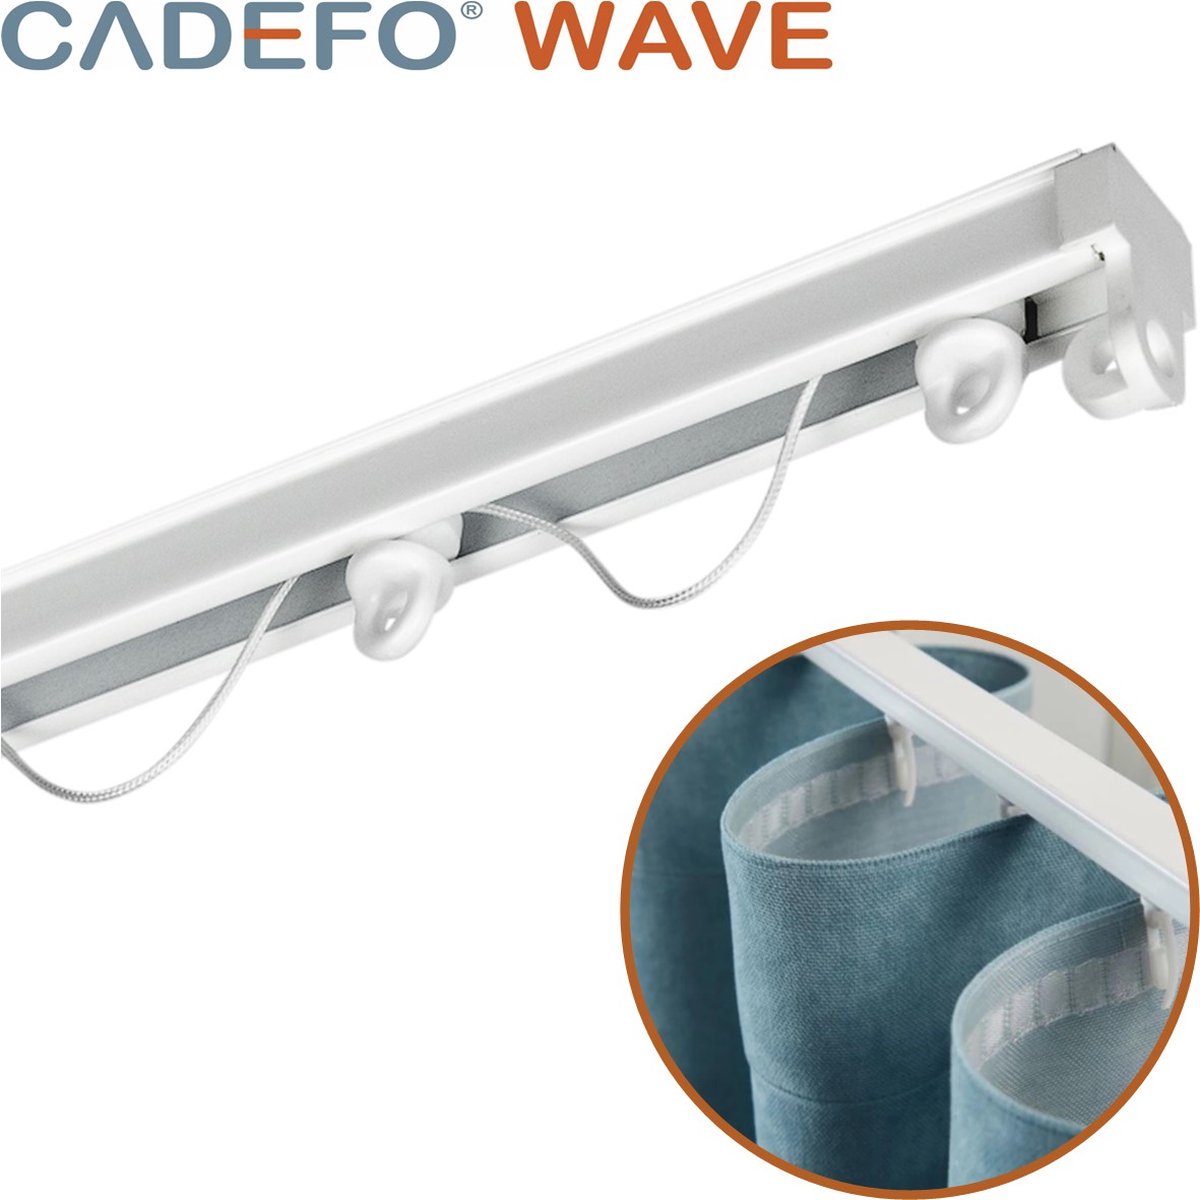 CADEFO WAVE (151 - 200 cm) Gordijnrails - Compleet op maat! - UIT 1 STUK - Leverbaar tot 6 meter - Plafondbevestiging - Lengte 197 cm